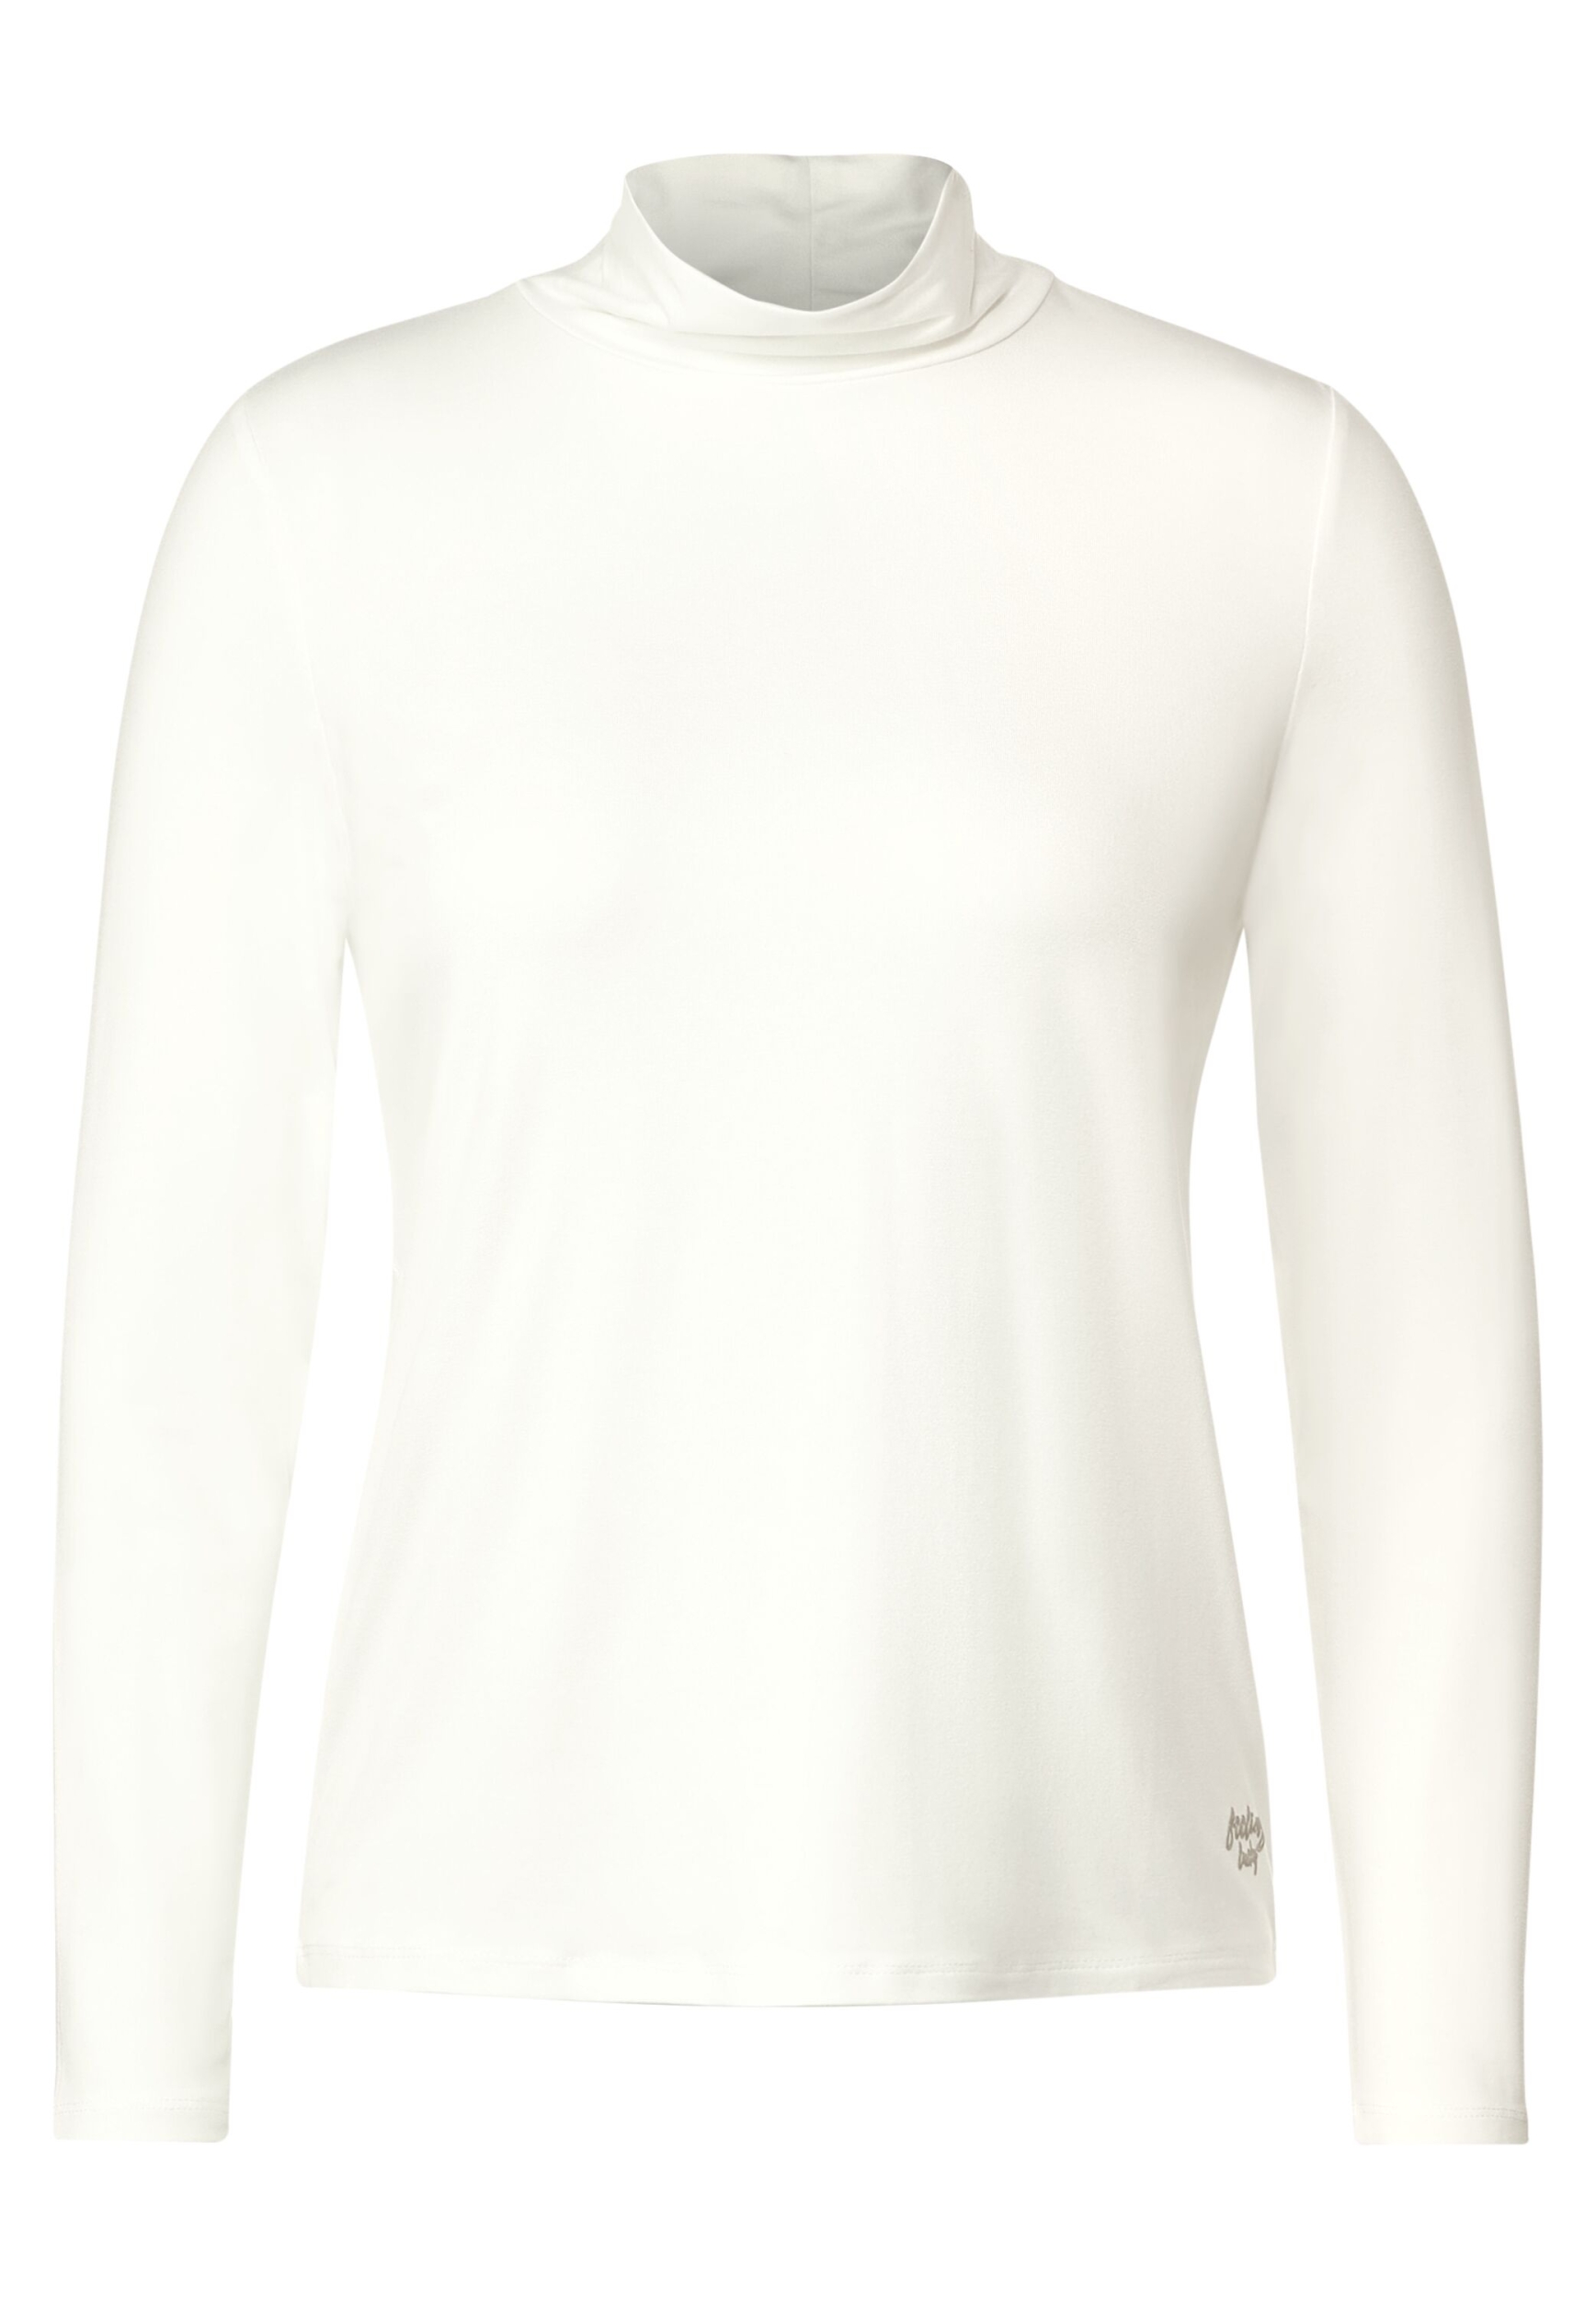 Rollkragen Langarmshirt | M | vanilla white | B320540-13474-M